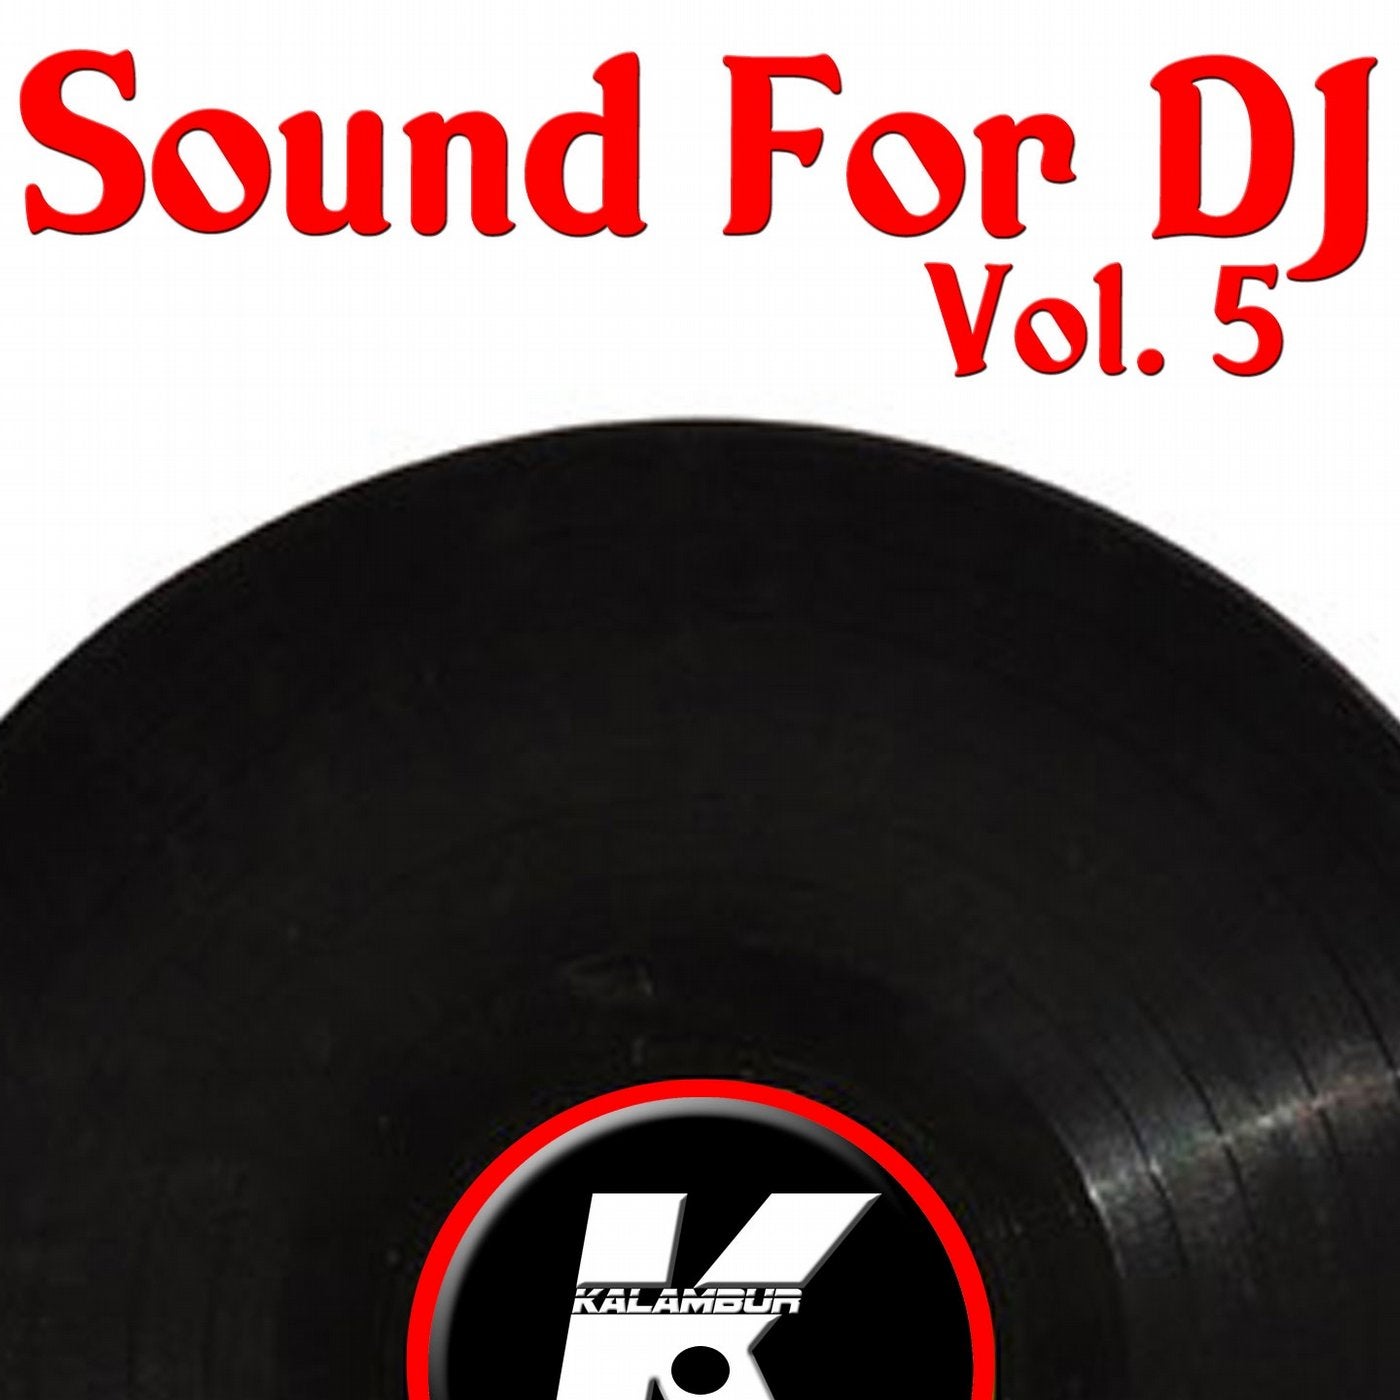 SOUND FOR DJ VOL 5